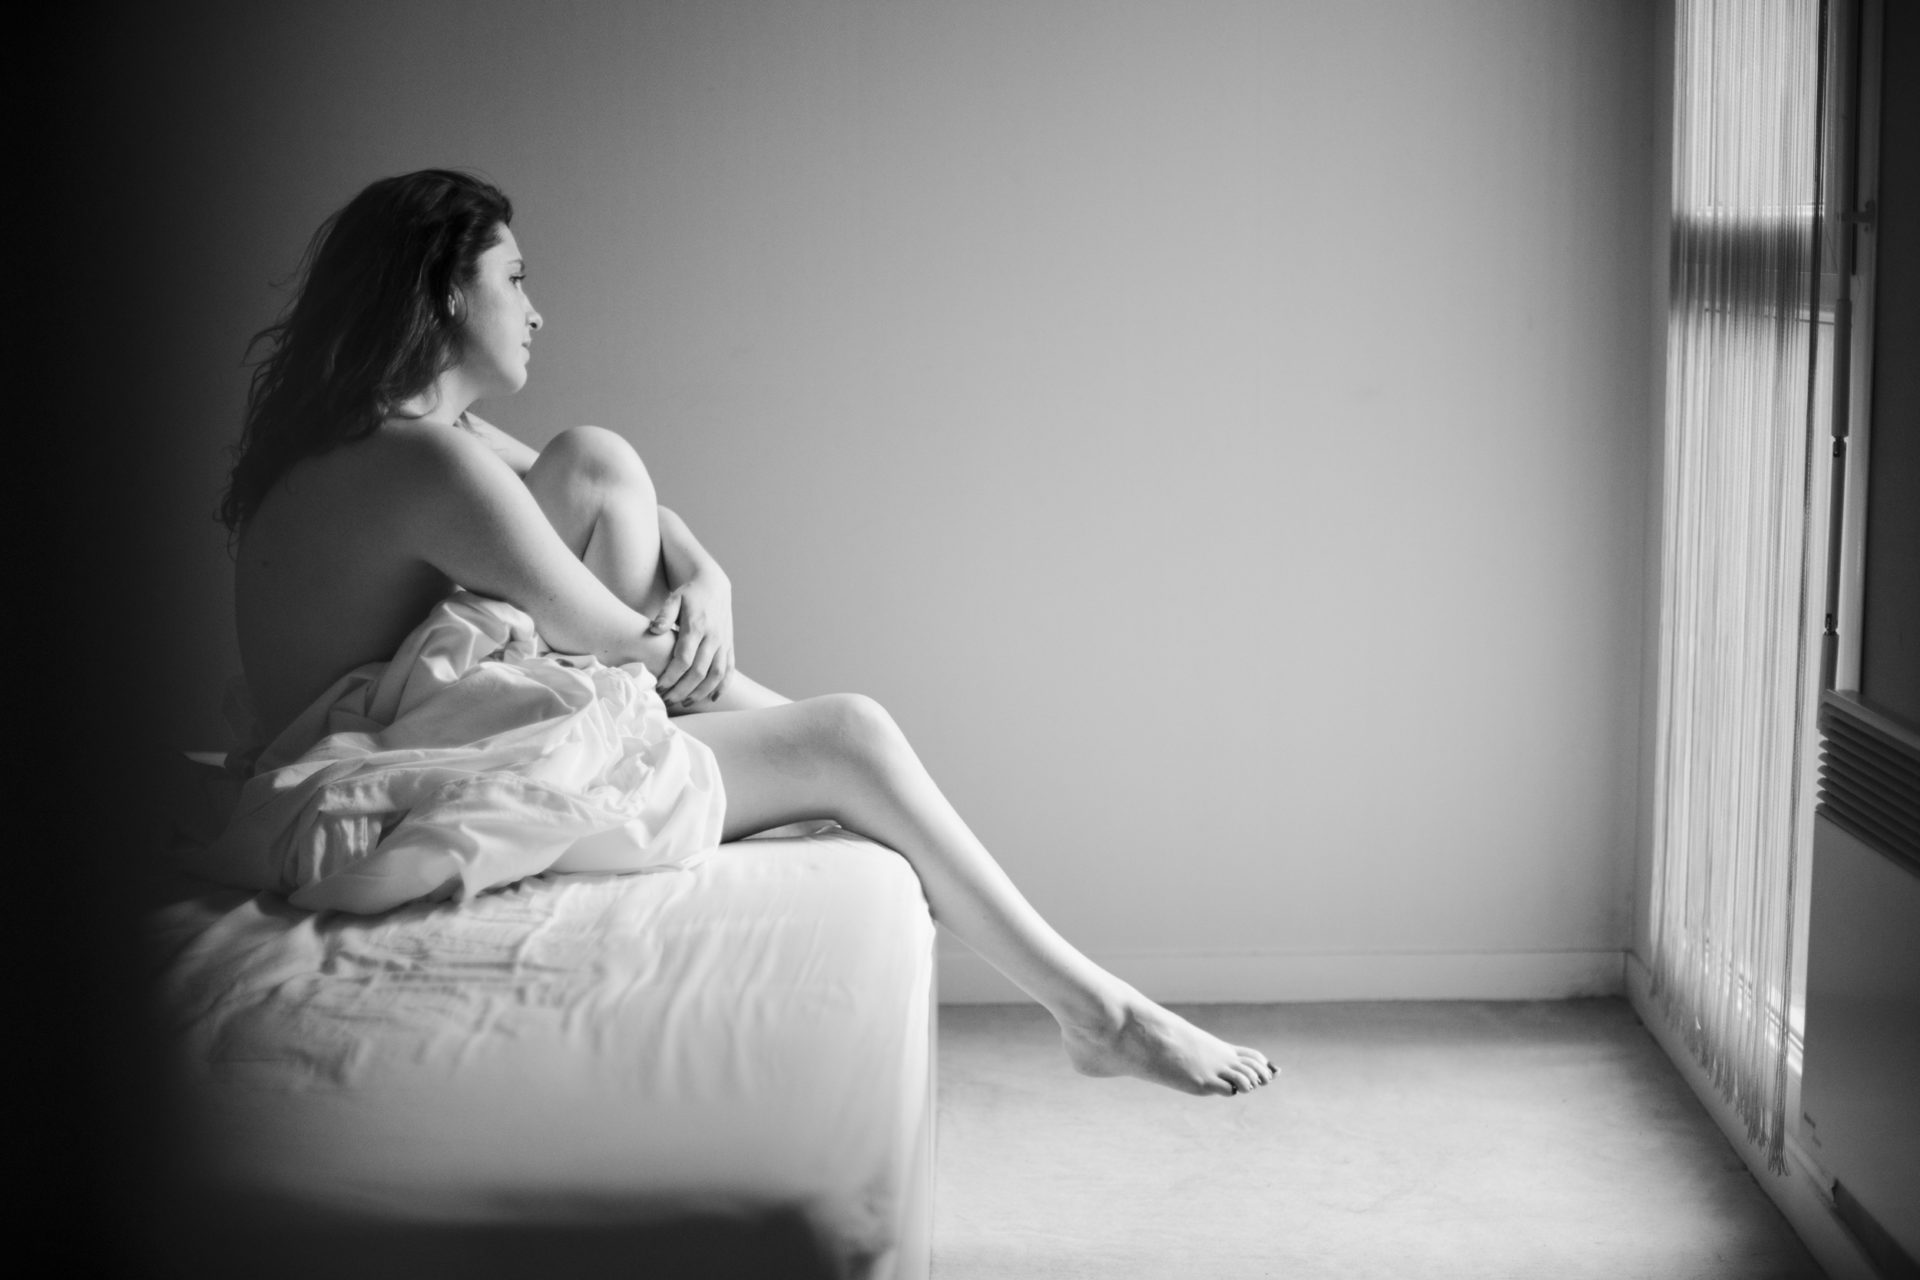 stephanie laisney photographe boudoir lifestyle domicile féminité lumière naturel etre femme session intime estime de soi sensualité angouleme charente